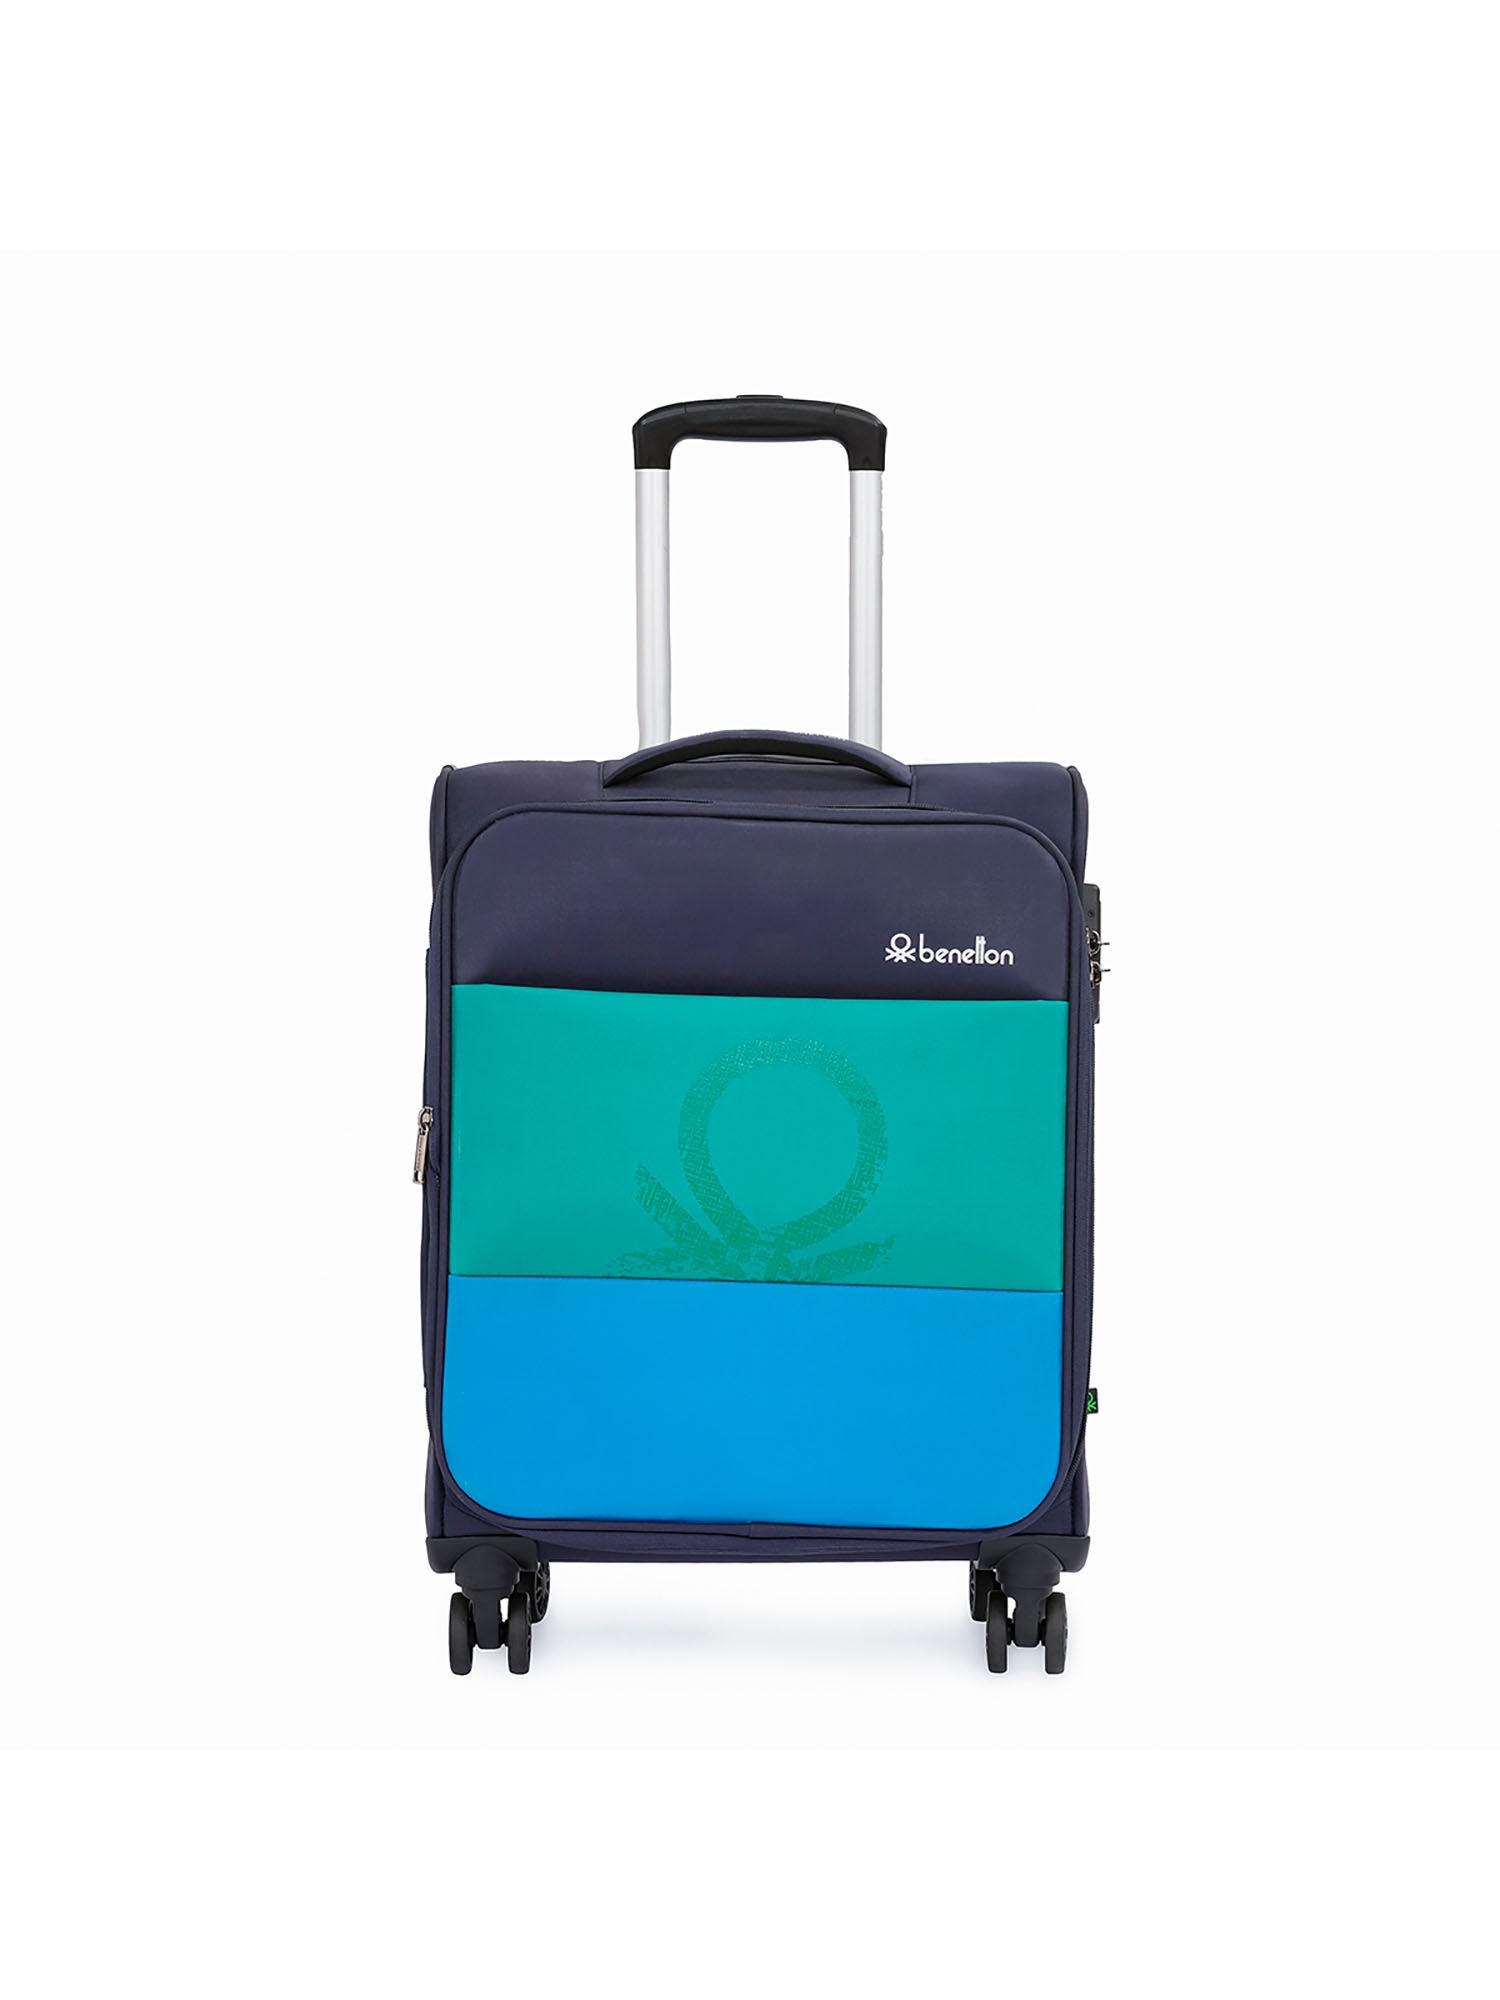 archimedes unisex soft luggage navy blue, green, 58 cm trolley bag